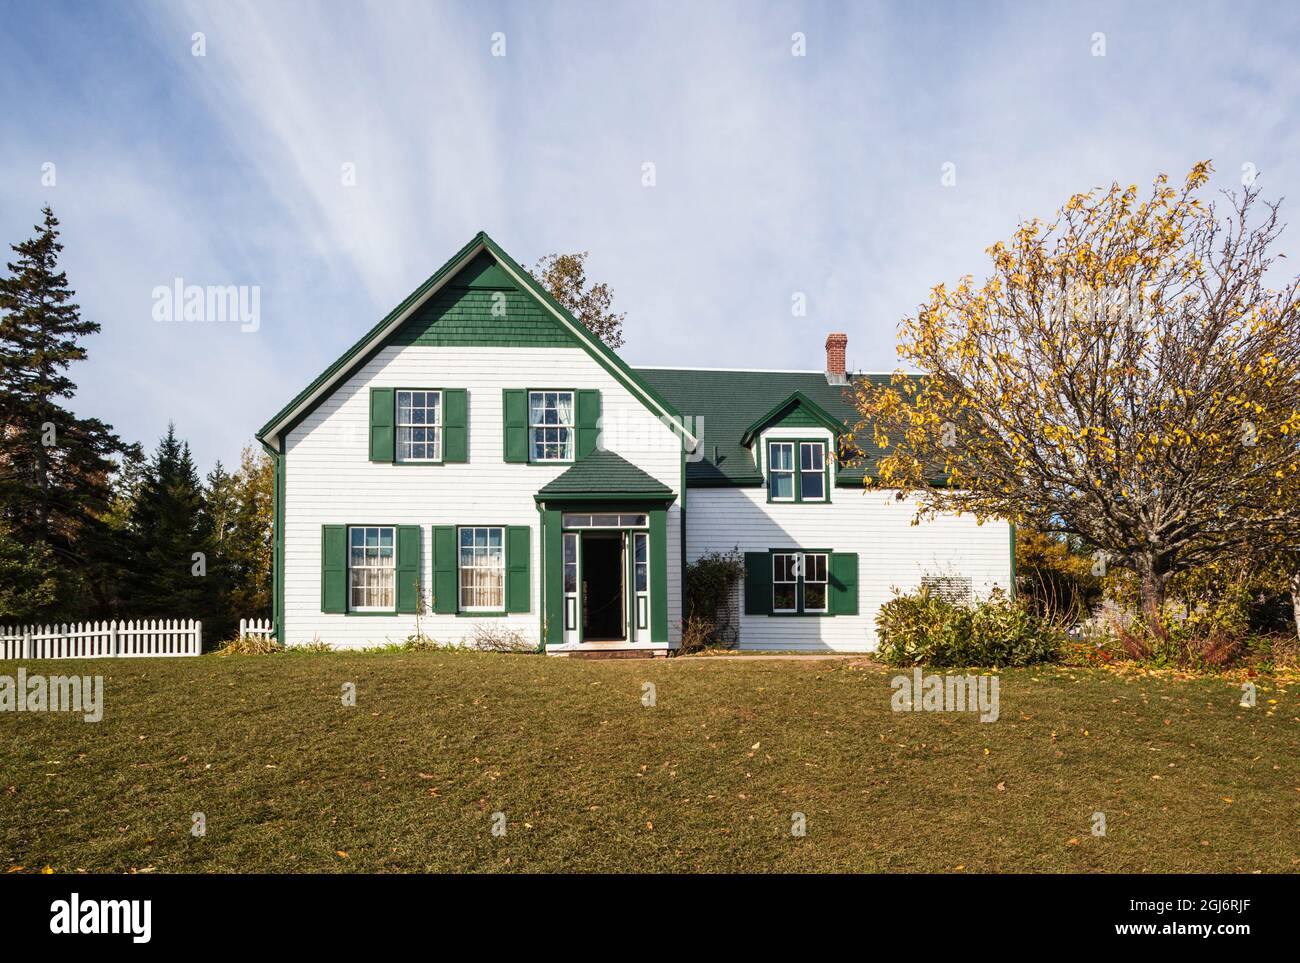 Kanada, Prince Edward Island, Cavendish, Green Gables House, dem ehemaligen Zuhause von Anne von Green Gables Autor Lucy Maud Montgomery Stockfoto